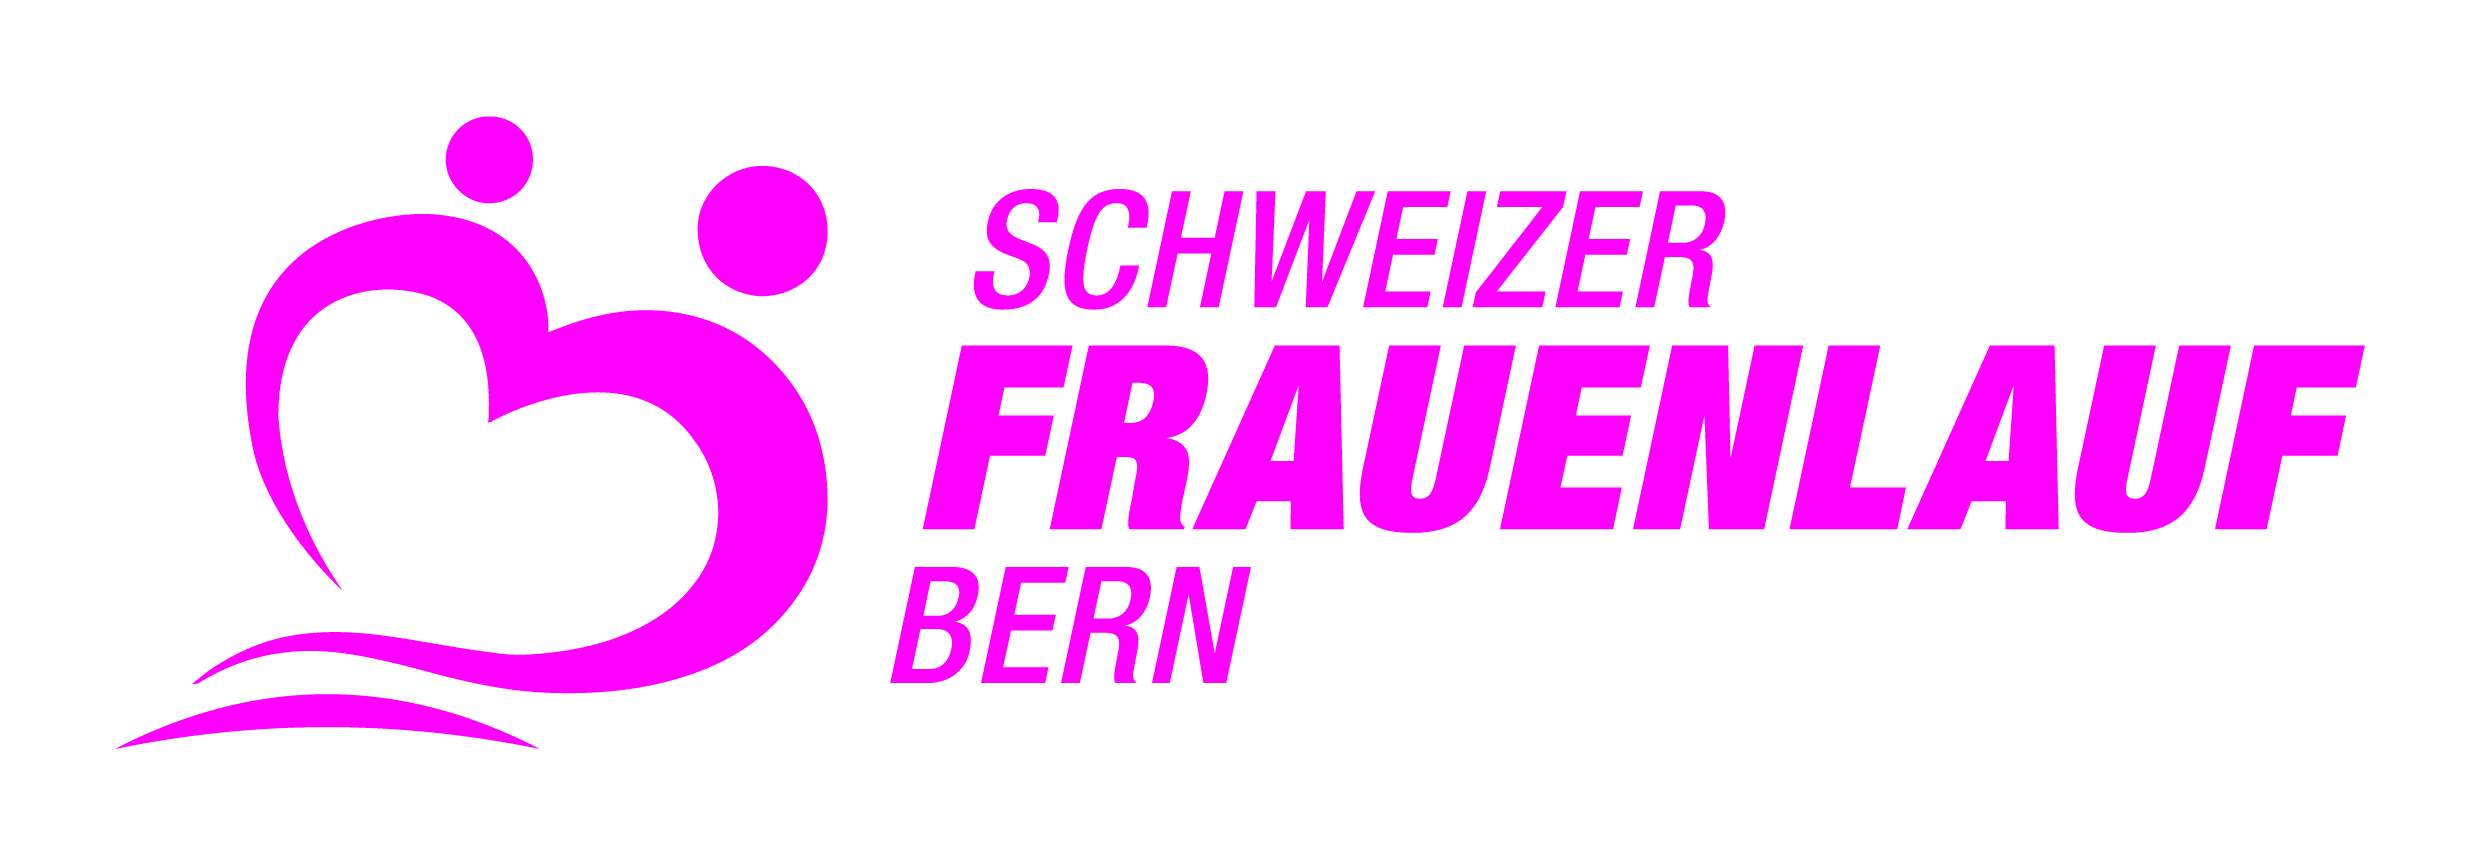 34. Schweizer Frauenlauf Bern